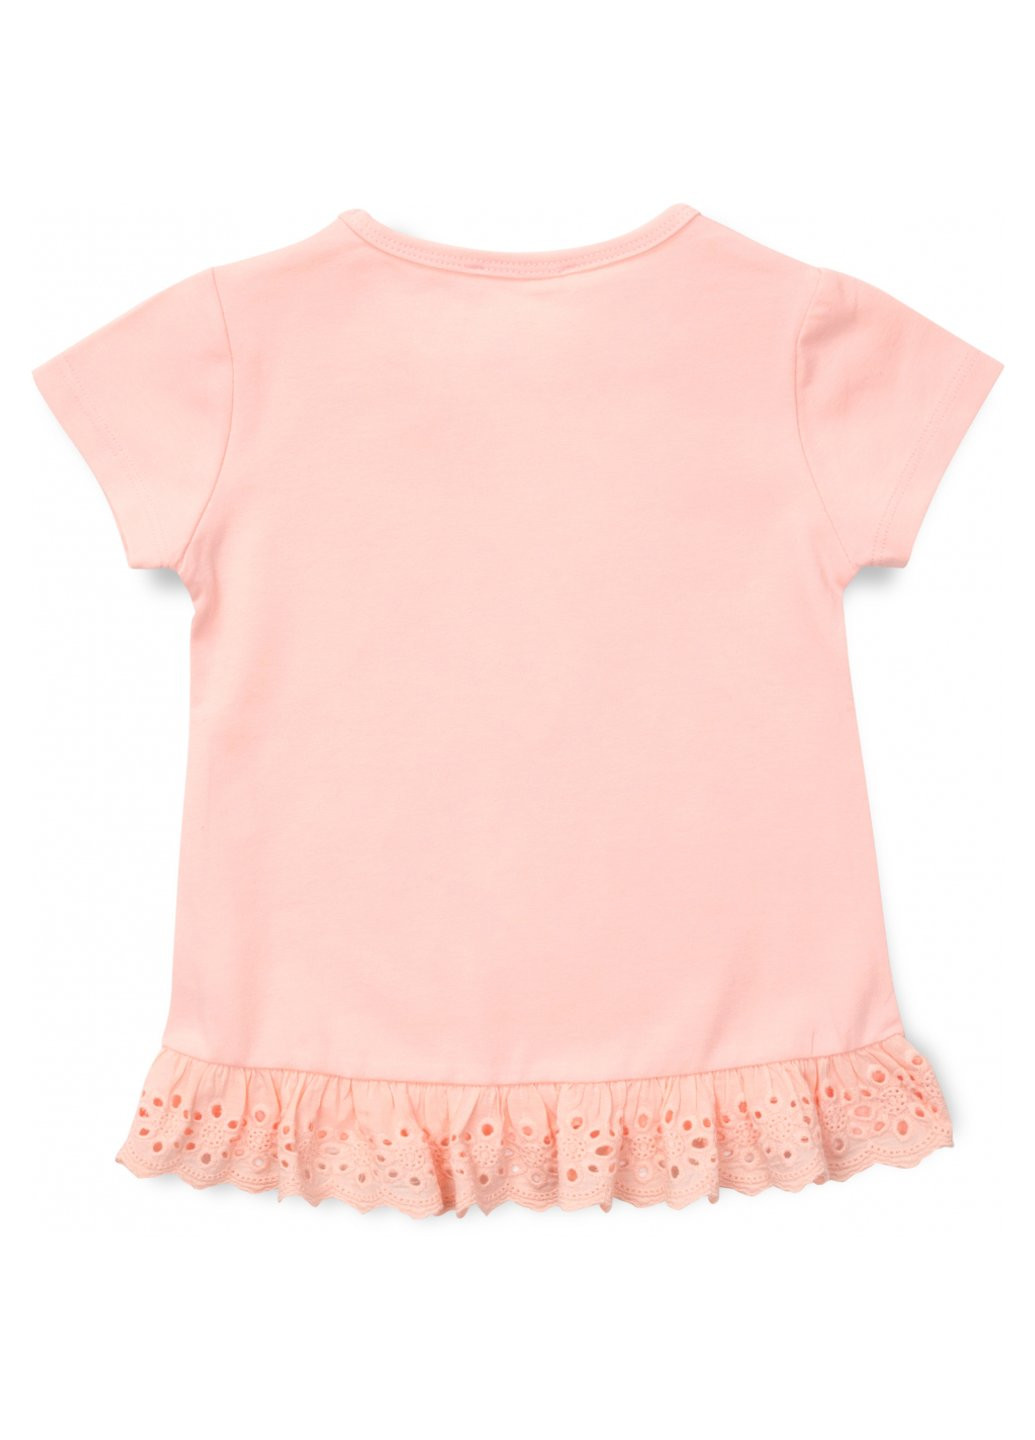 Комбинированный летний набор детской одежды с единорогом (13741-98g-peach) Breeze